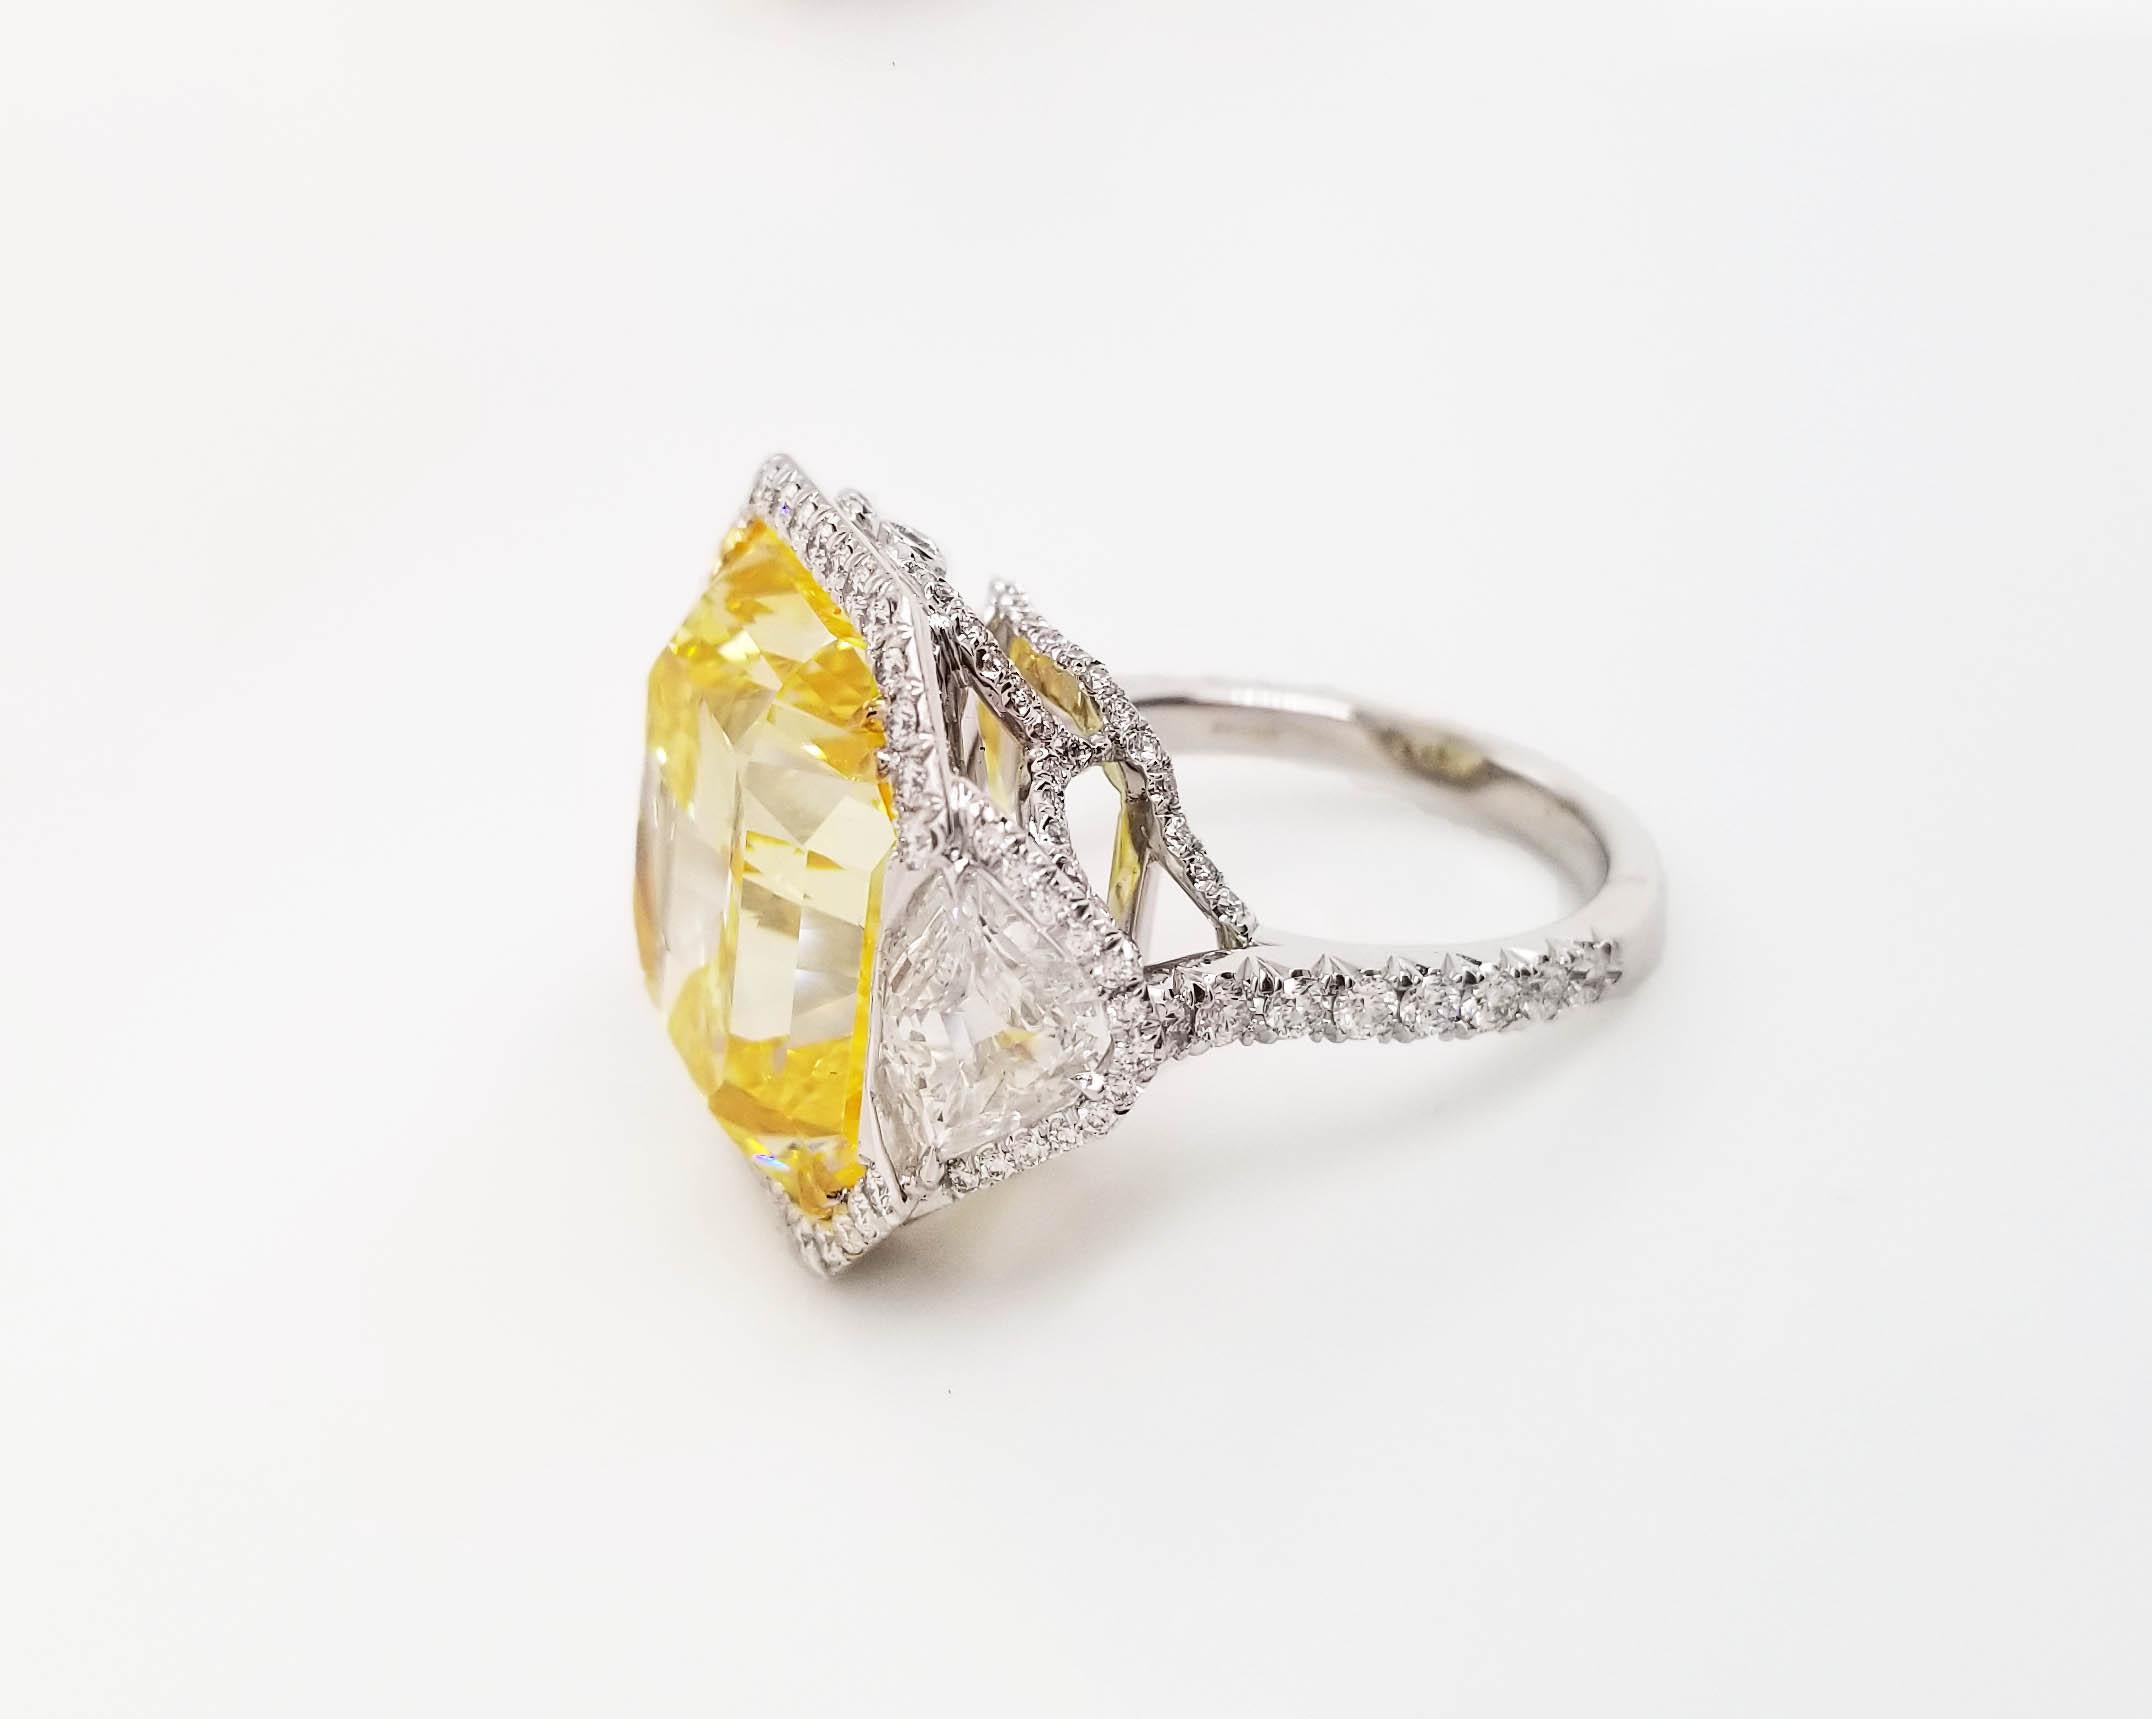 Cette étonnante bague classique de Scarselli est ornée d'un diamant de 20 carats de couleur jaune vif radiant avec un certificat GIA 5151483883 (voir la photo du certificat pour des informations détaillées sur la pierre). Le diamant central est